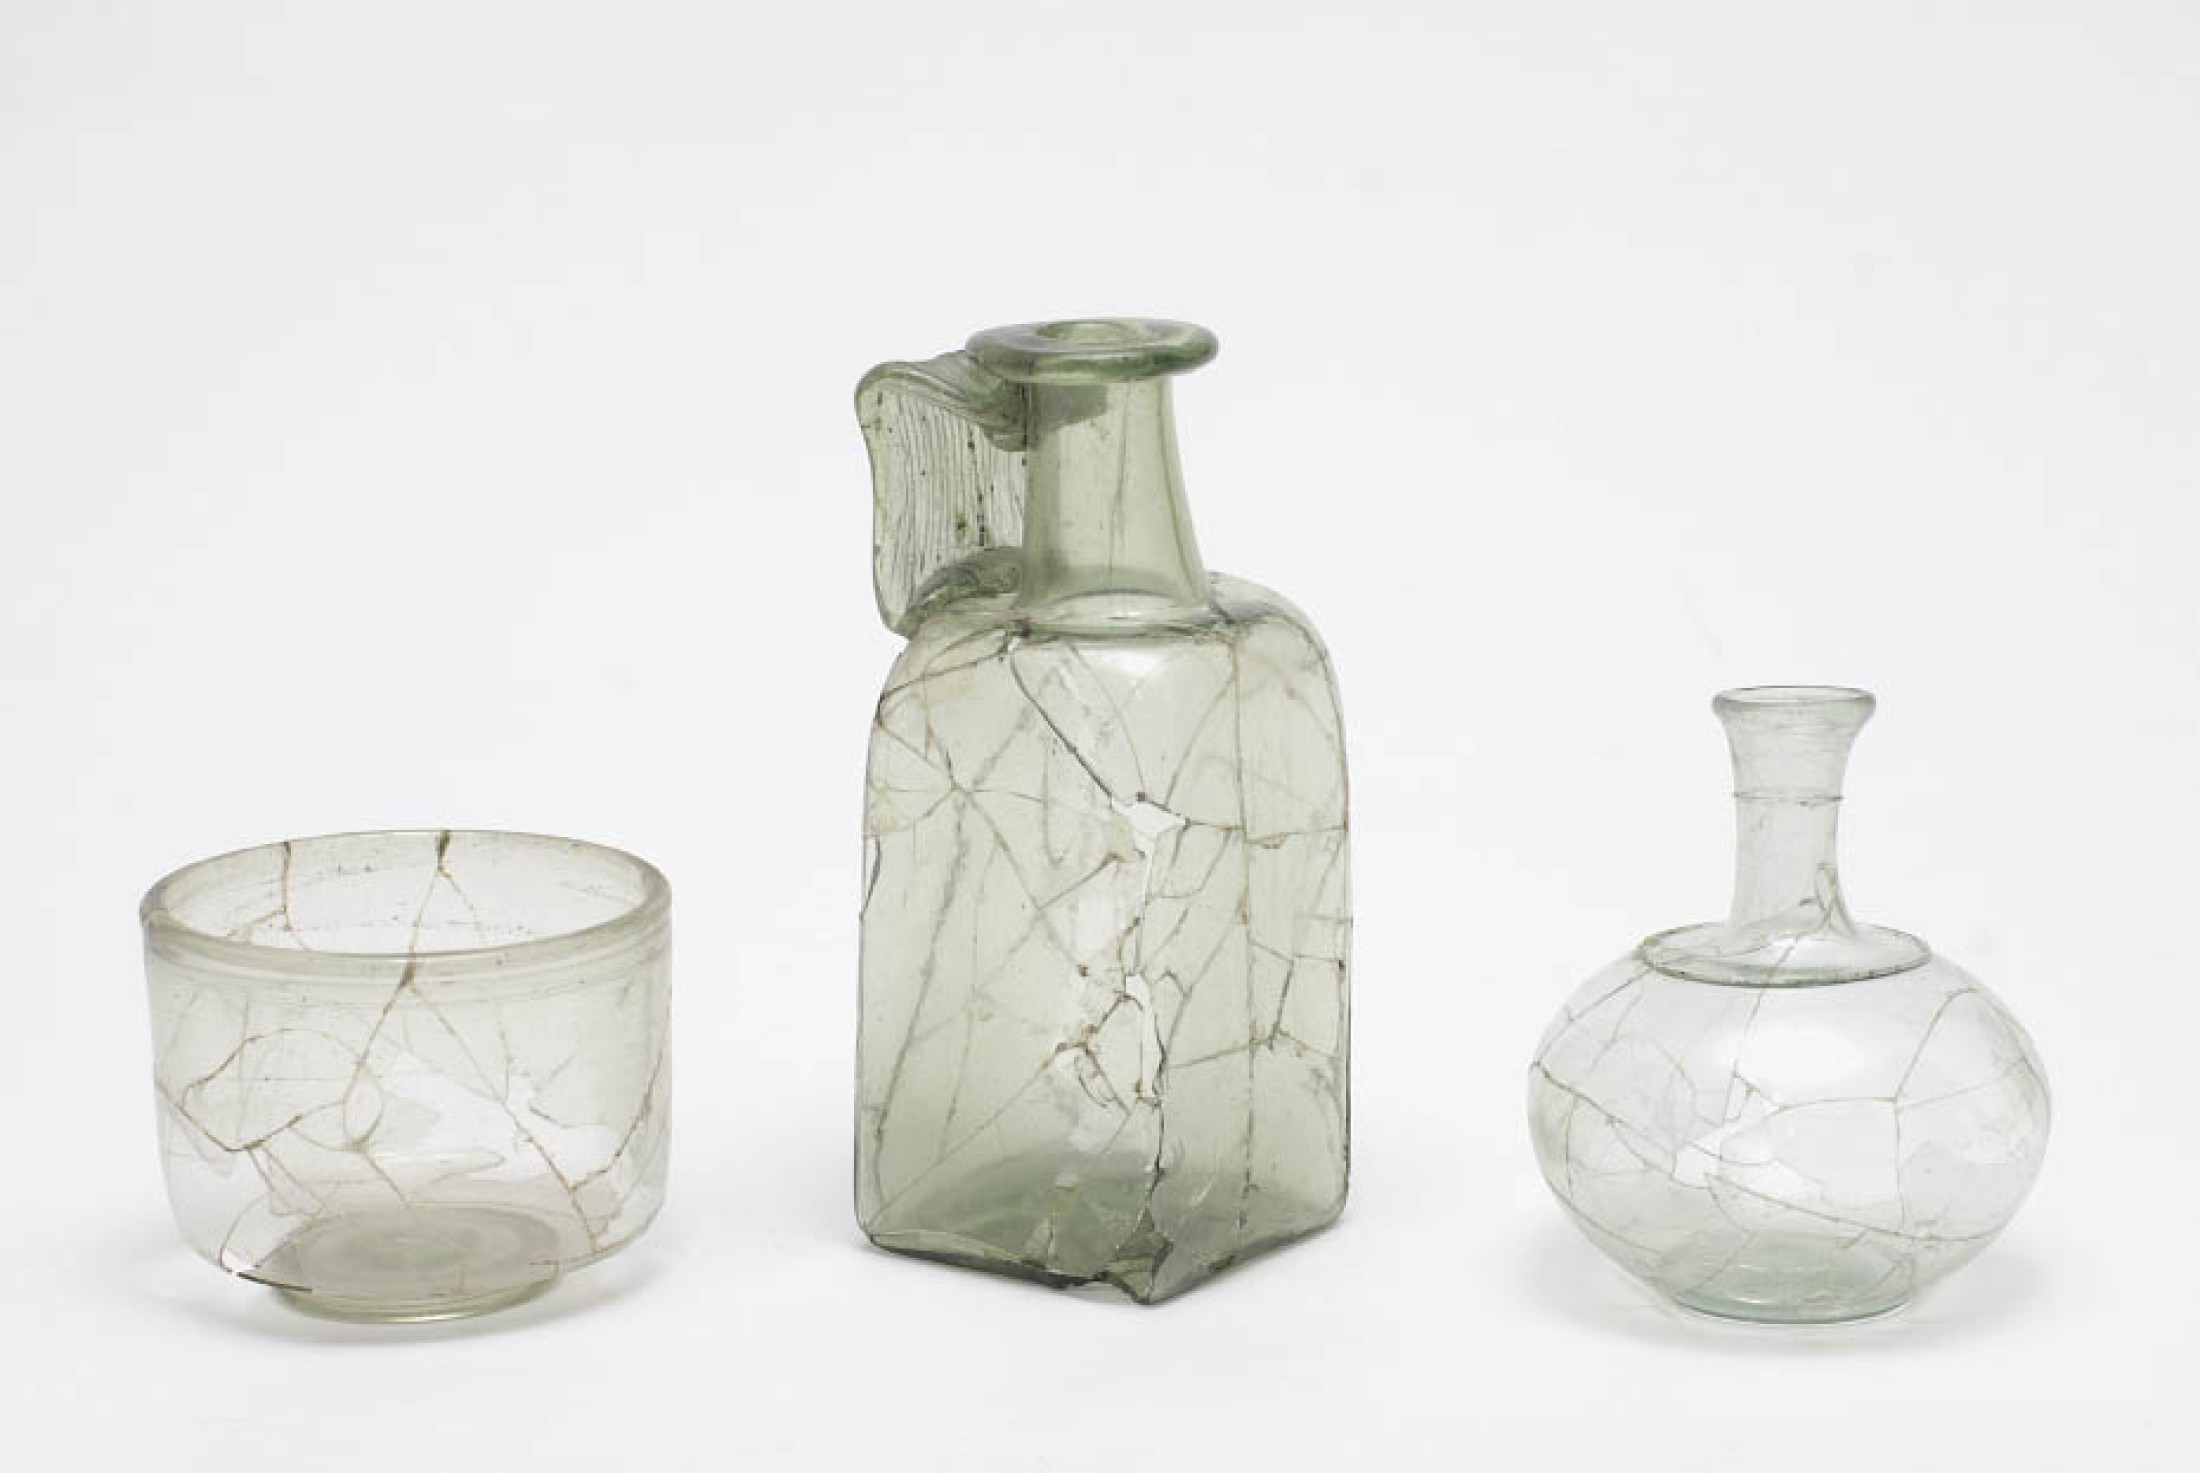 : Römische Glasgefäße waren als importierte Luxuswaren auch sehr beliebt als Grabbeigaben. (Foto: A. W. Rausch - NHM Wien)